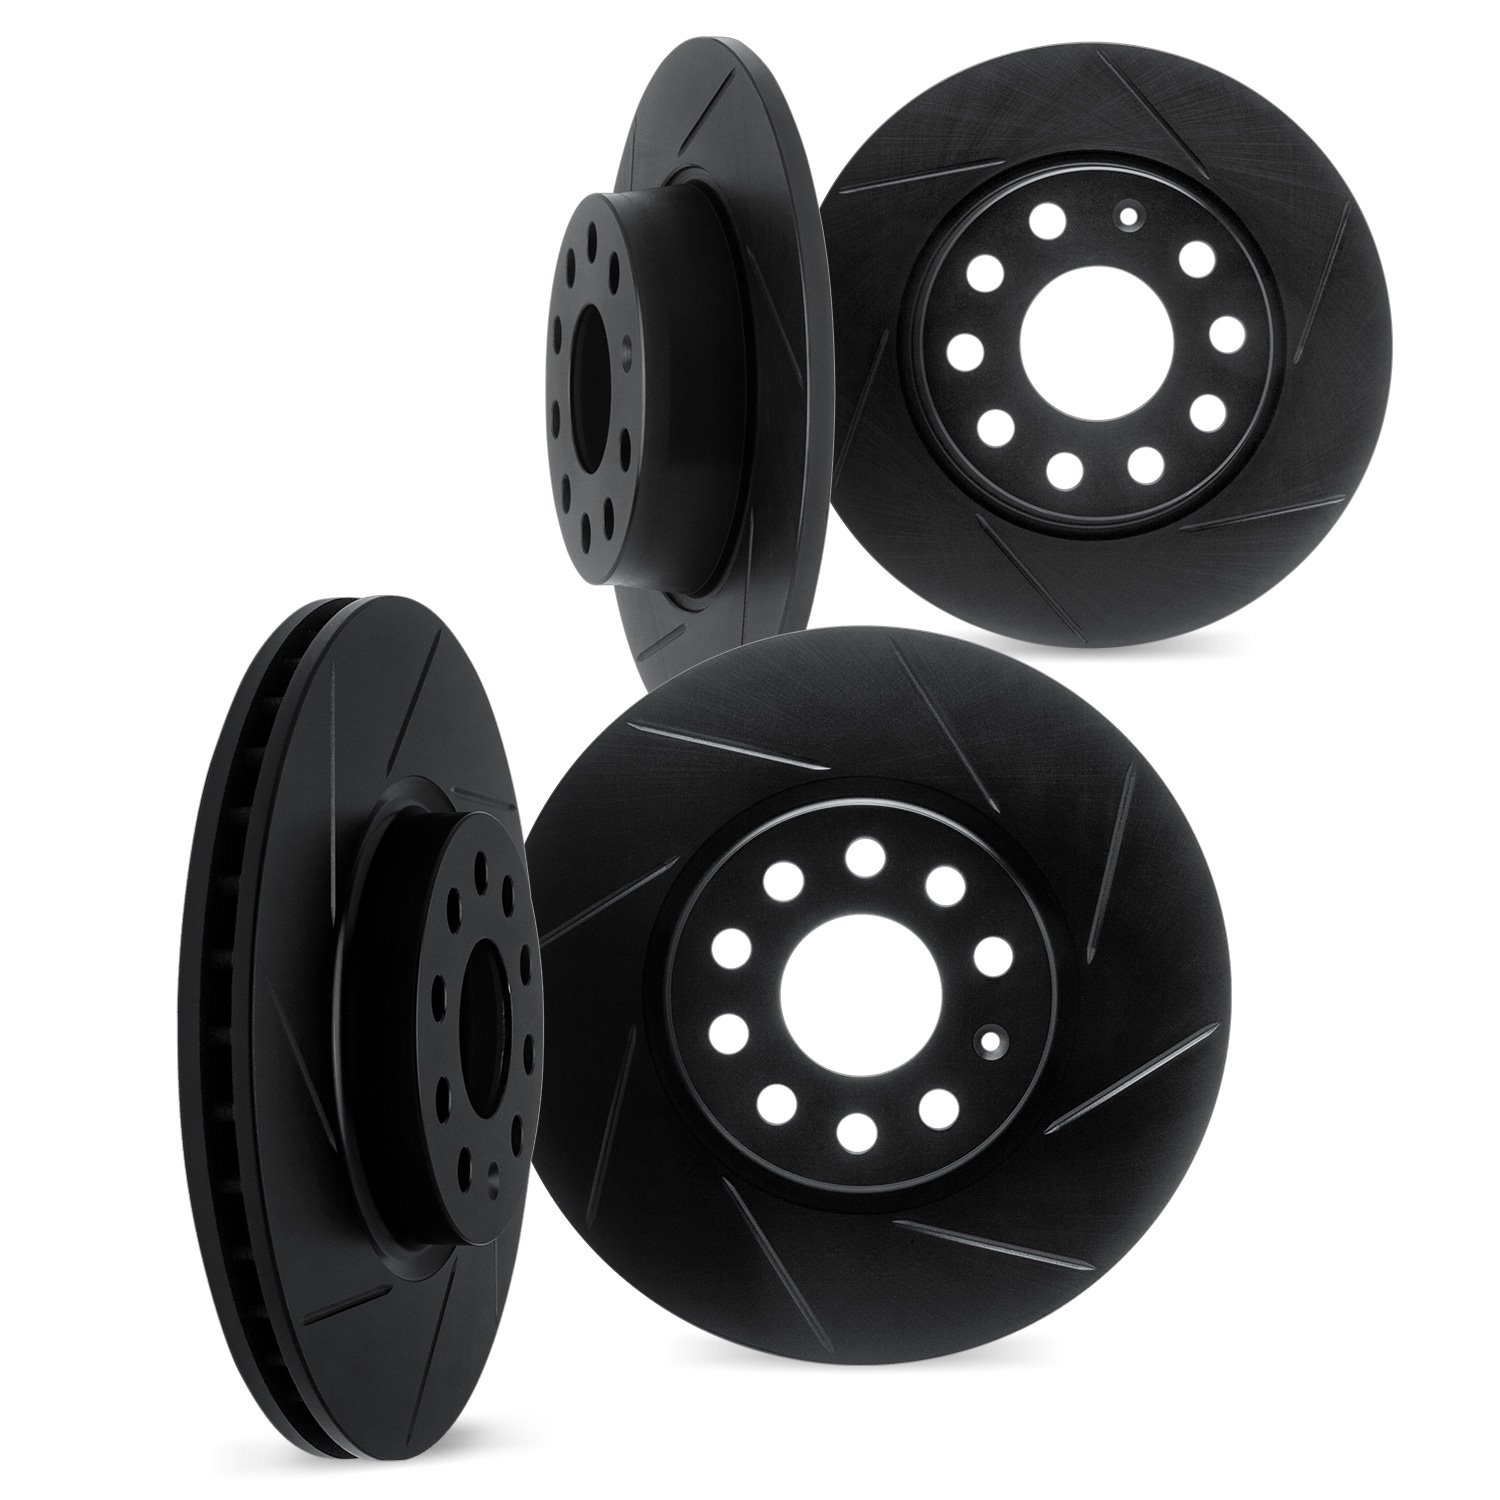 3004-03072 Slotted Brake Rotors [Black], Fits Select Kia/Hyundai/Genesis, Position: Front and Rear